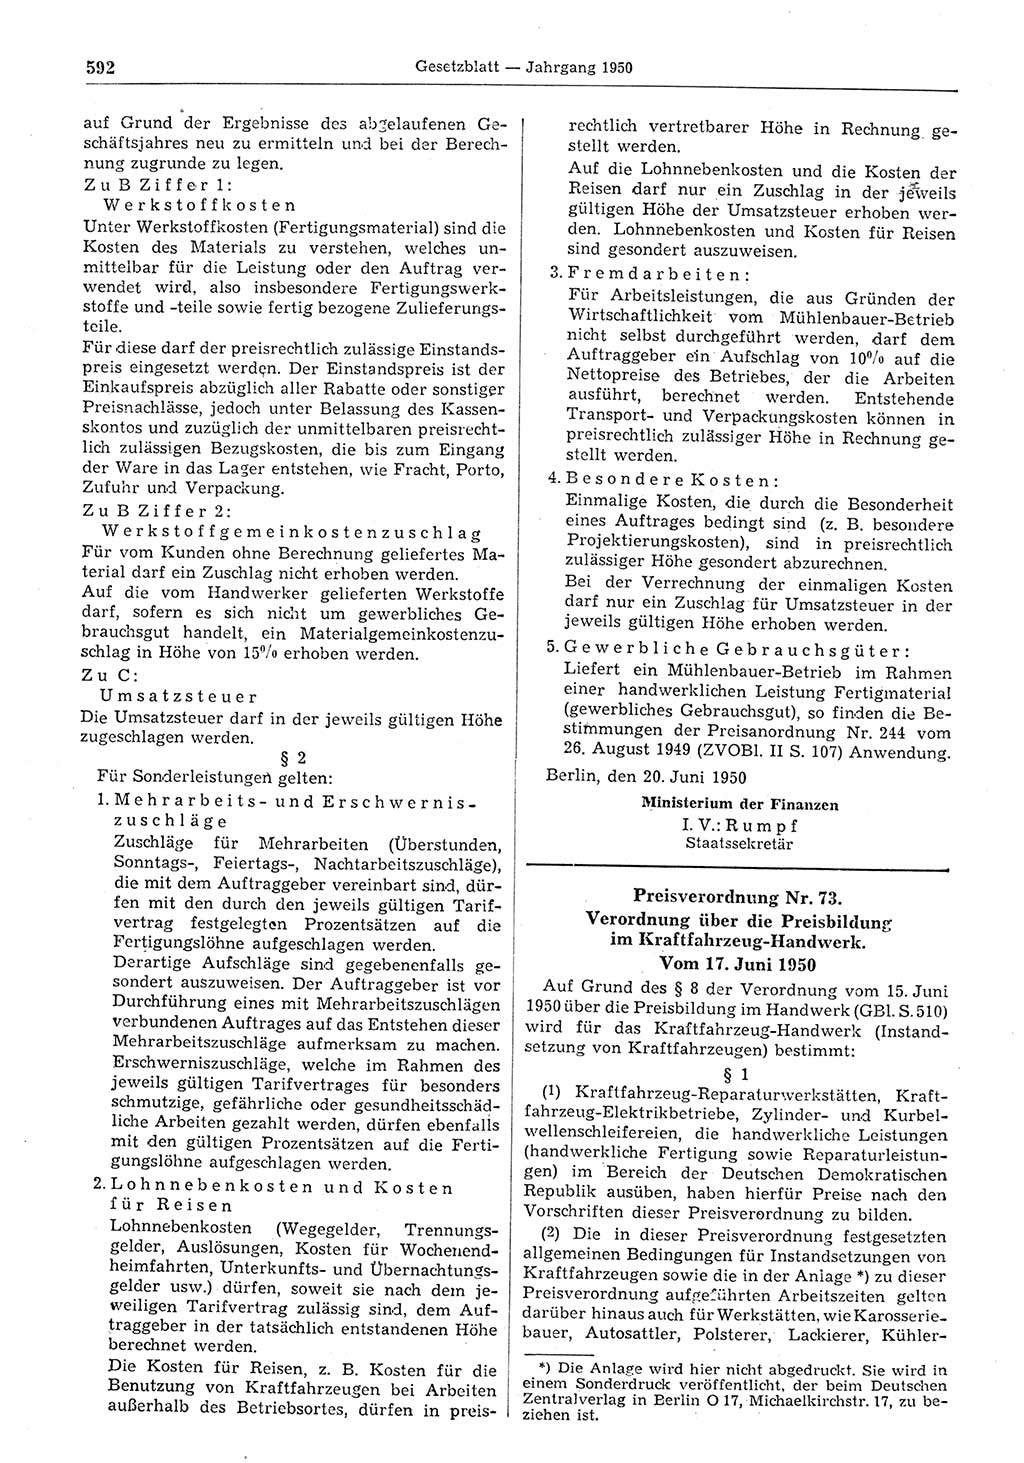 Gesetzblatt (GBl.) der Deutschen Demokratischen Republik (DDR) 1950, Seite 592 (GBl. DDR 1950, S. 592)